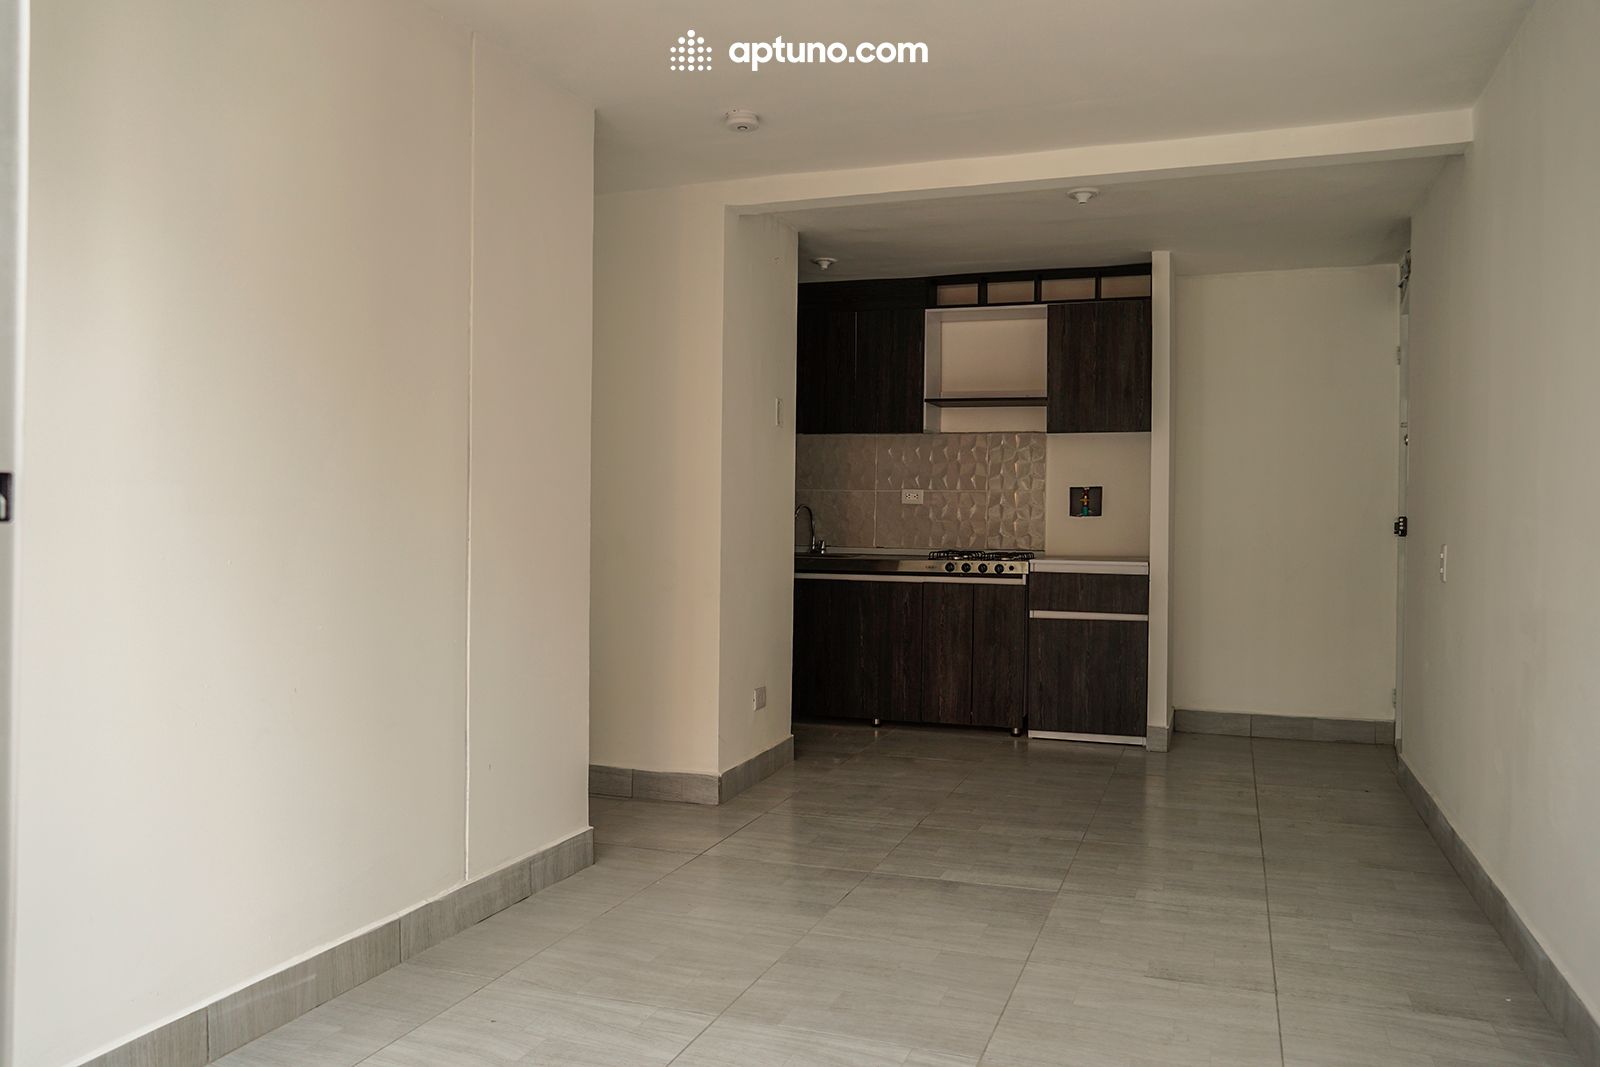 Apartamento en arriendo Guiparma 41 m² - $ 800.000,00